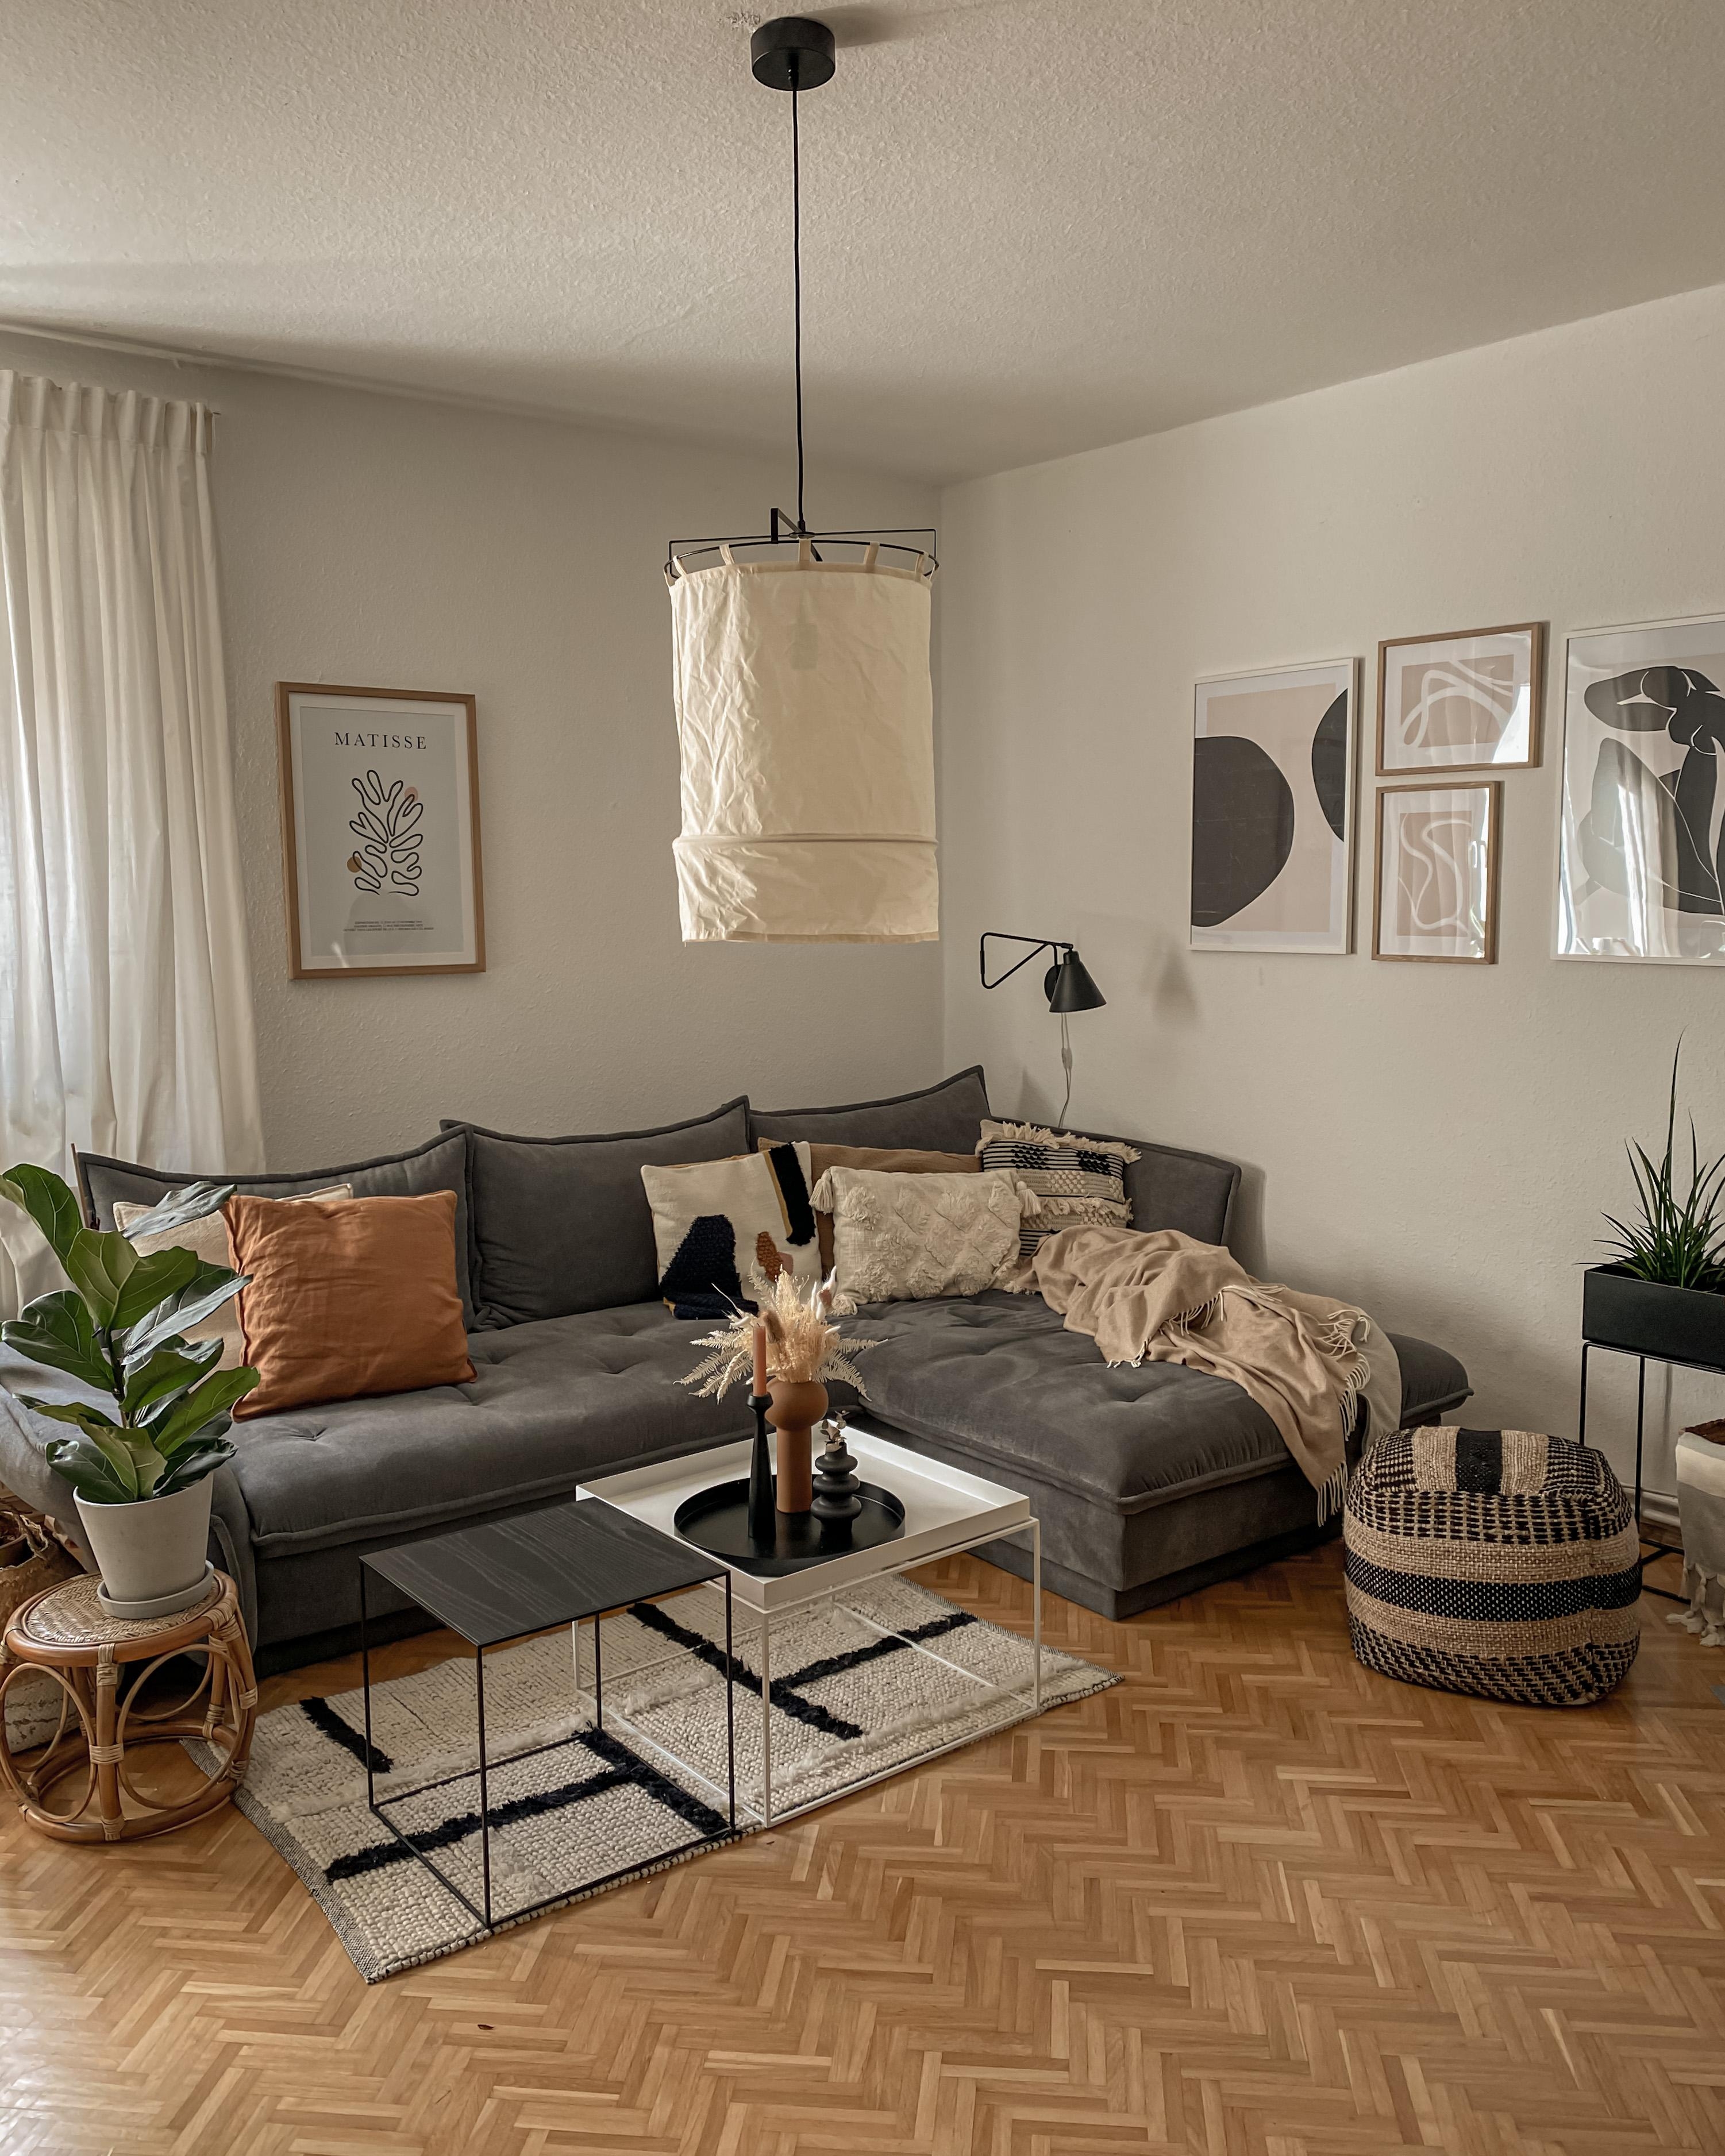 COZY COUCH VIBES✨☺️
#couch #wohnzimmer #livingroom #bilderwand #cozyhome #altbau #skandi